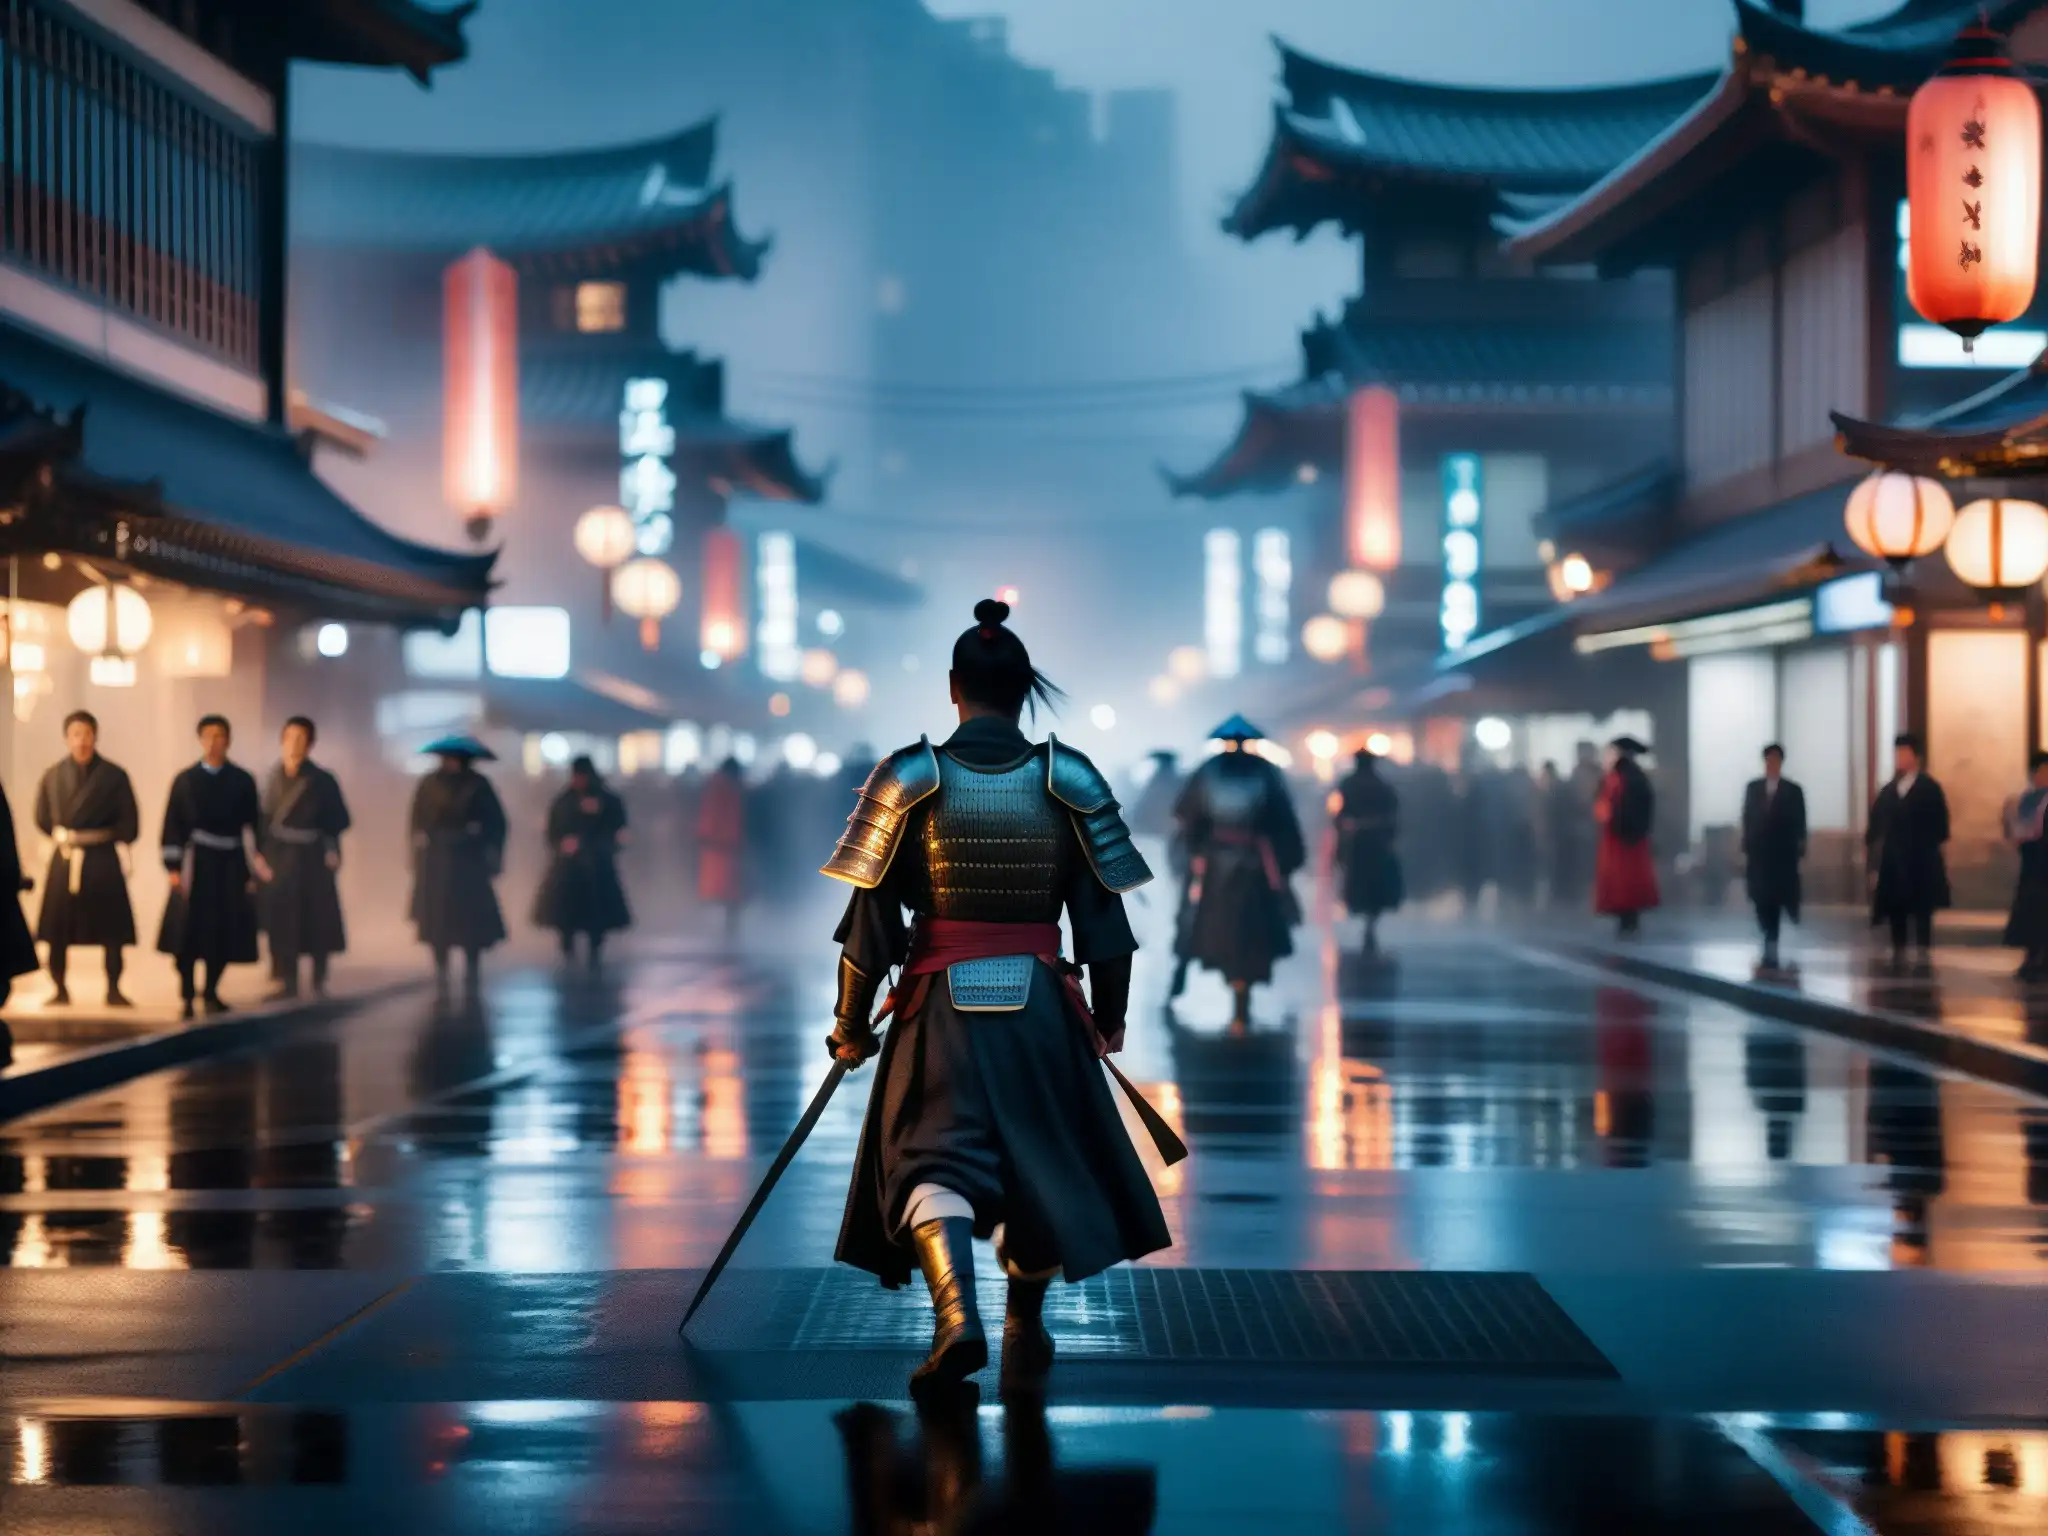 Un samurái ancestral vaga entre la ciudad moderna, evocando misterio y tradición